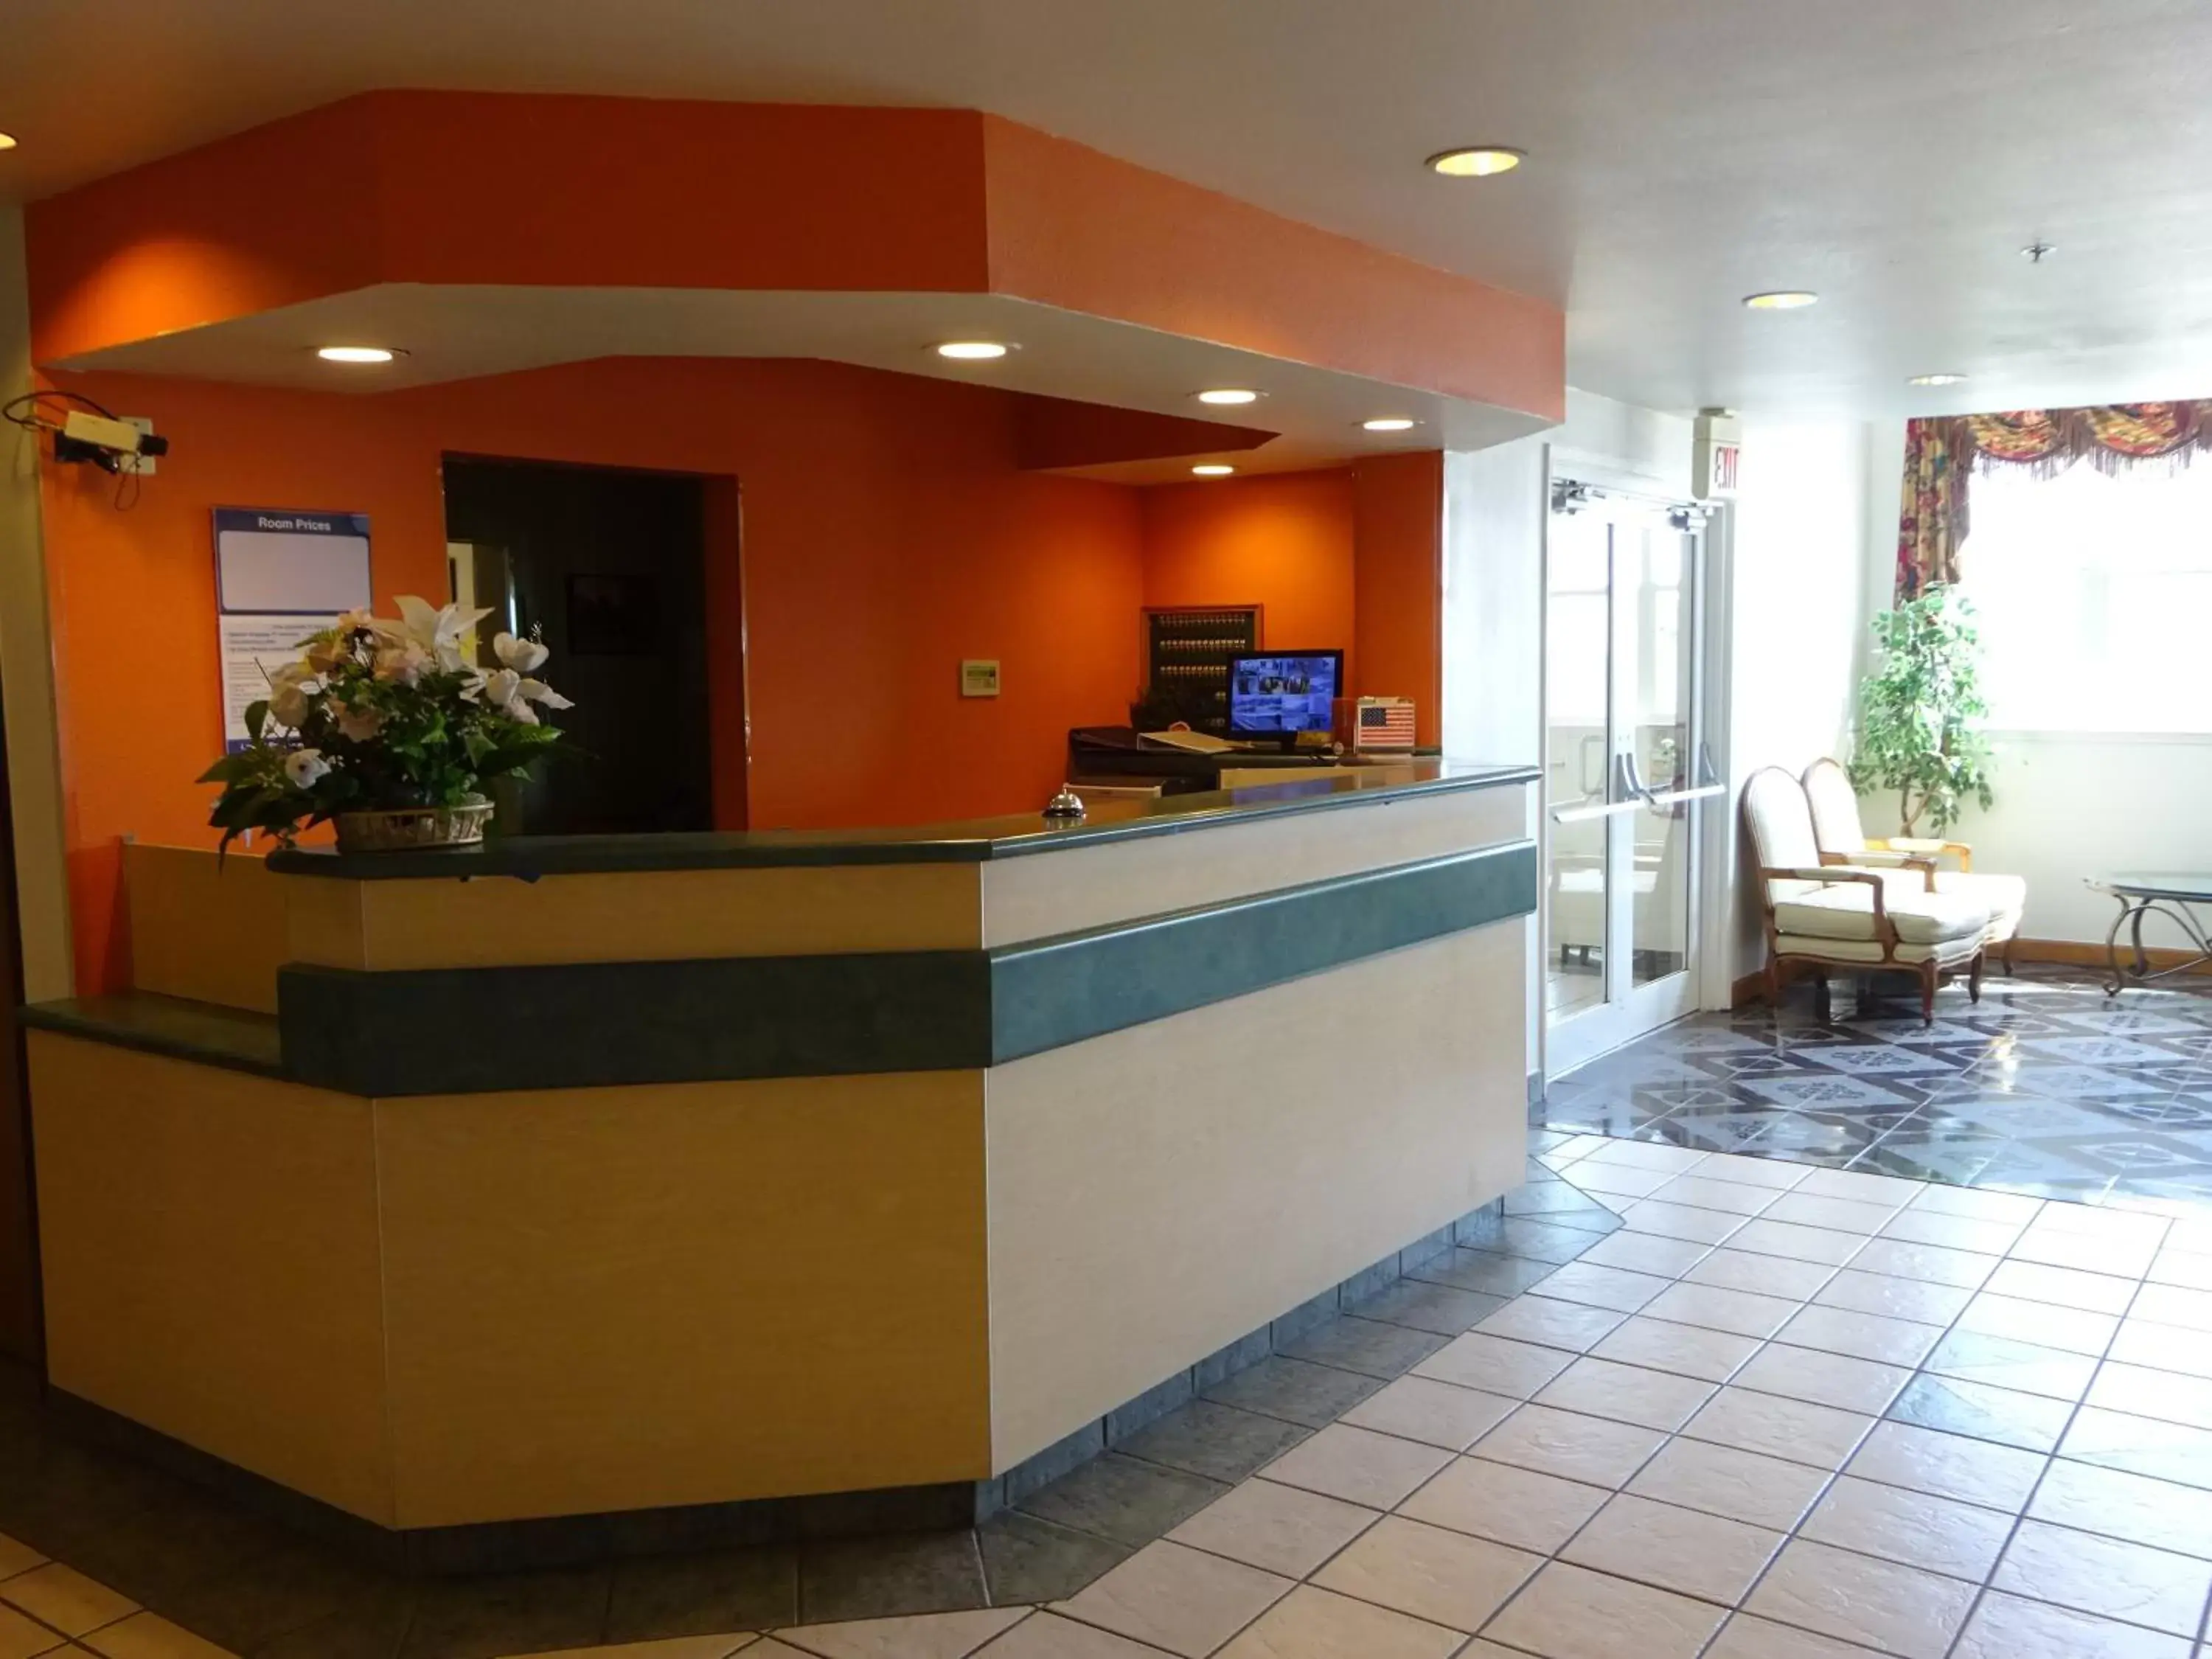 Lobby or reception, Lobby/Reception in Motel 6-Fort Worth, TX - Burleson